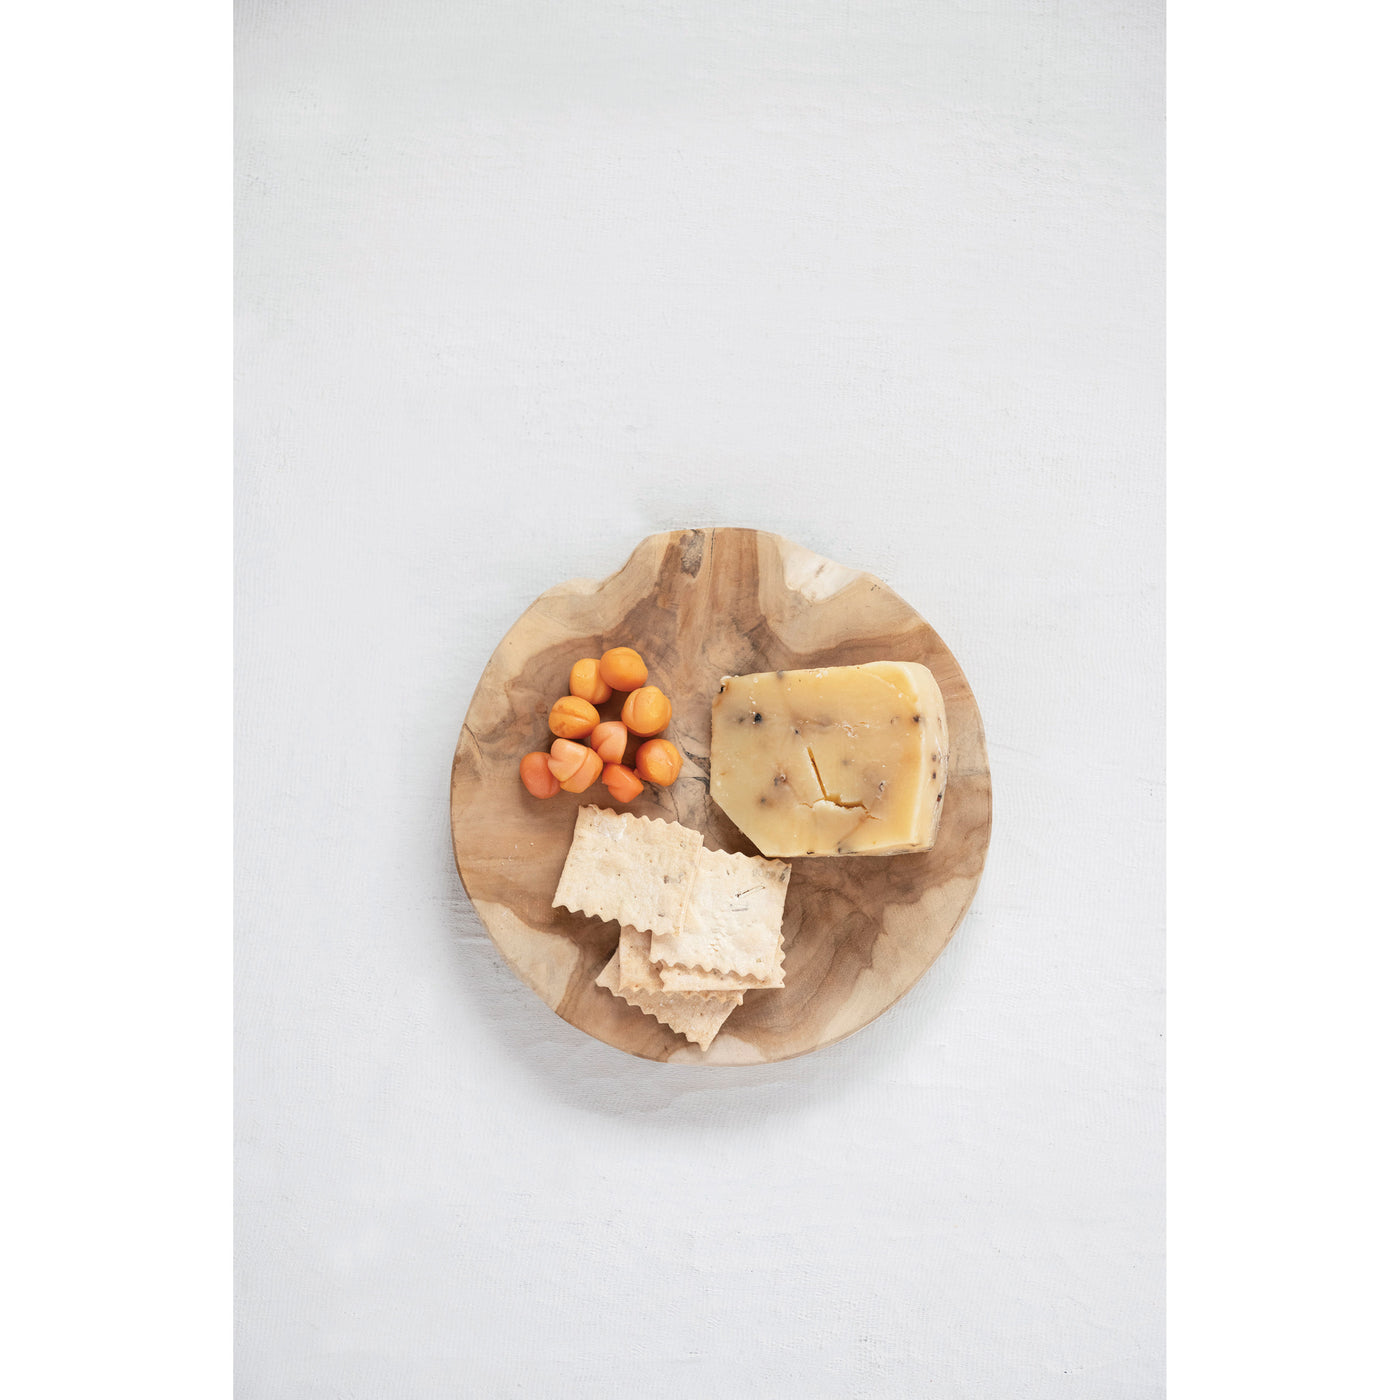 Round Teakwood Cheese/Cutting Board